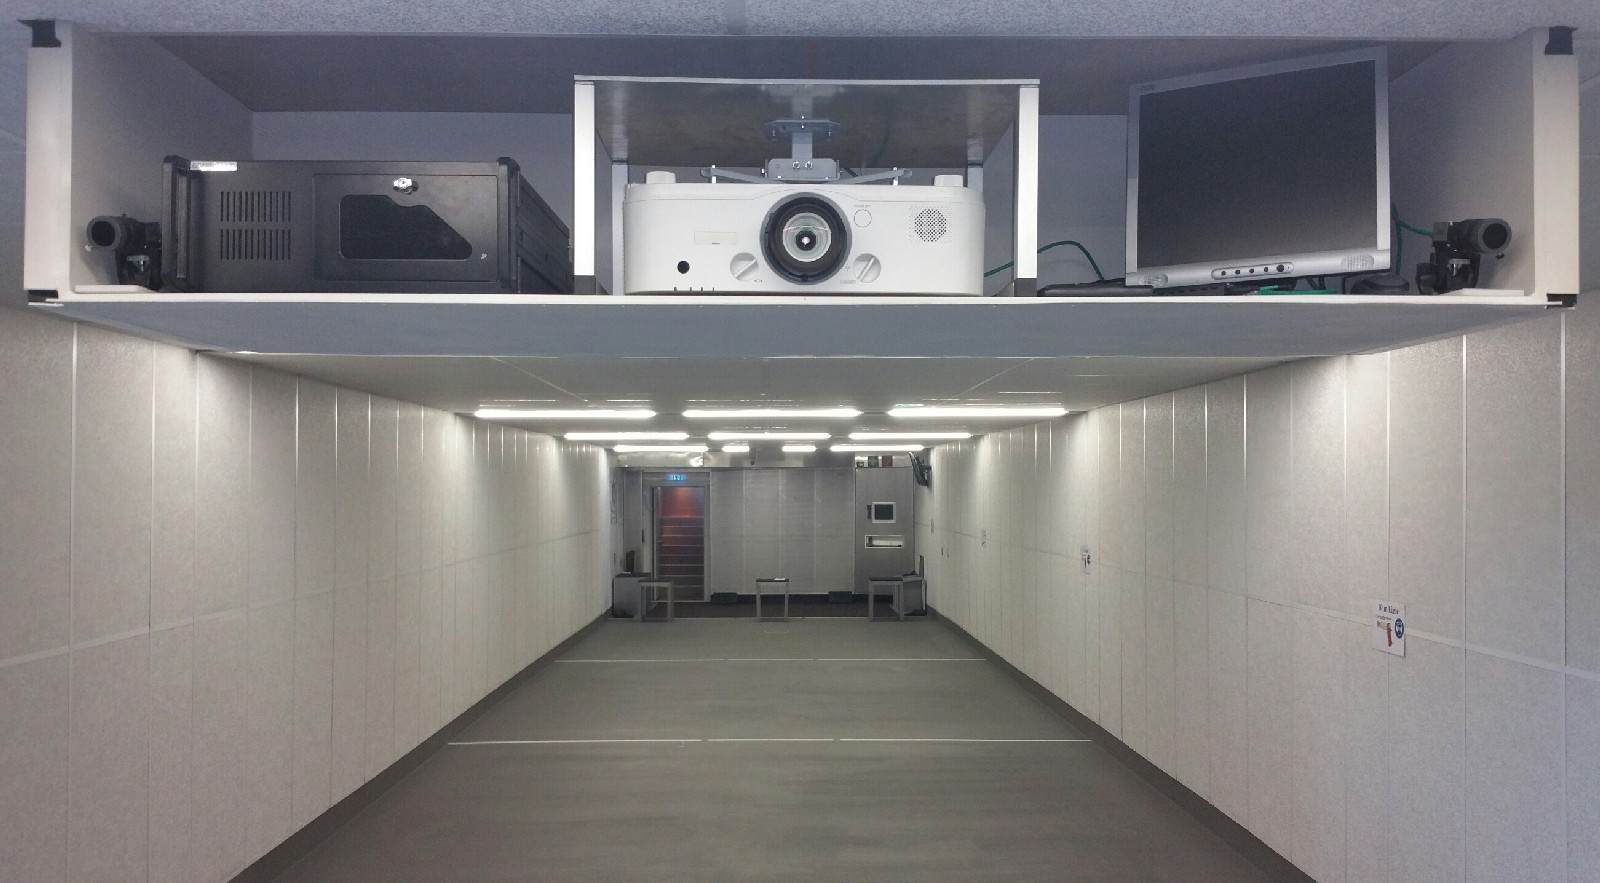 Projektionsbühne - Digitale Infrarot-Treffererkenungskameras - NEC Projektor